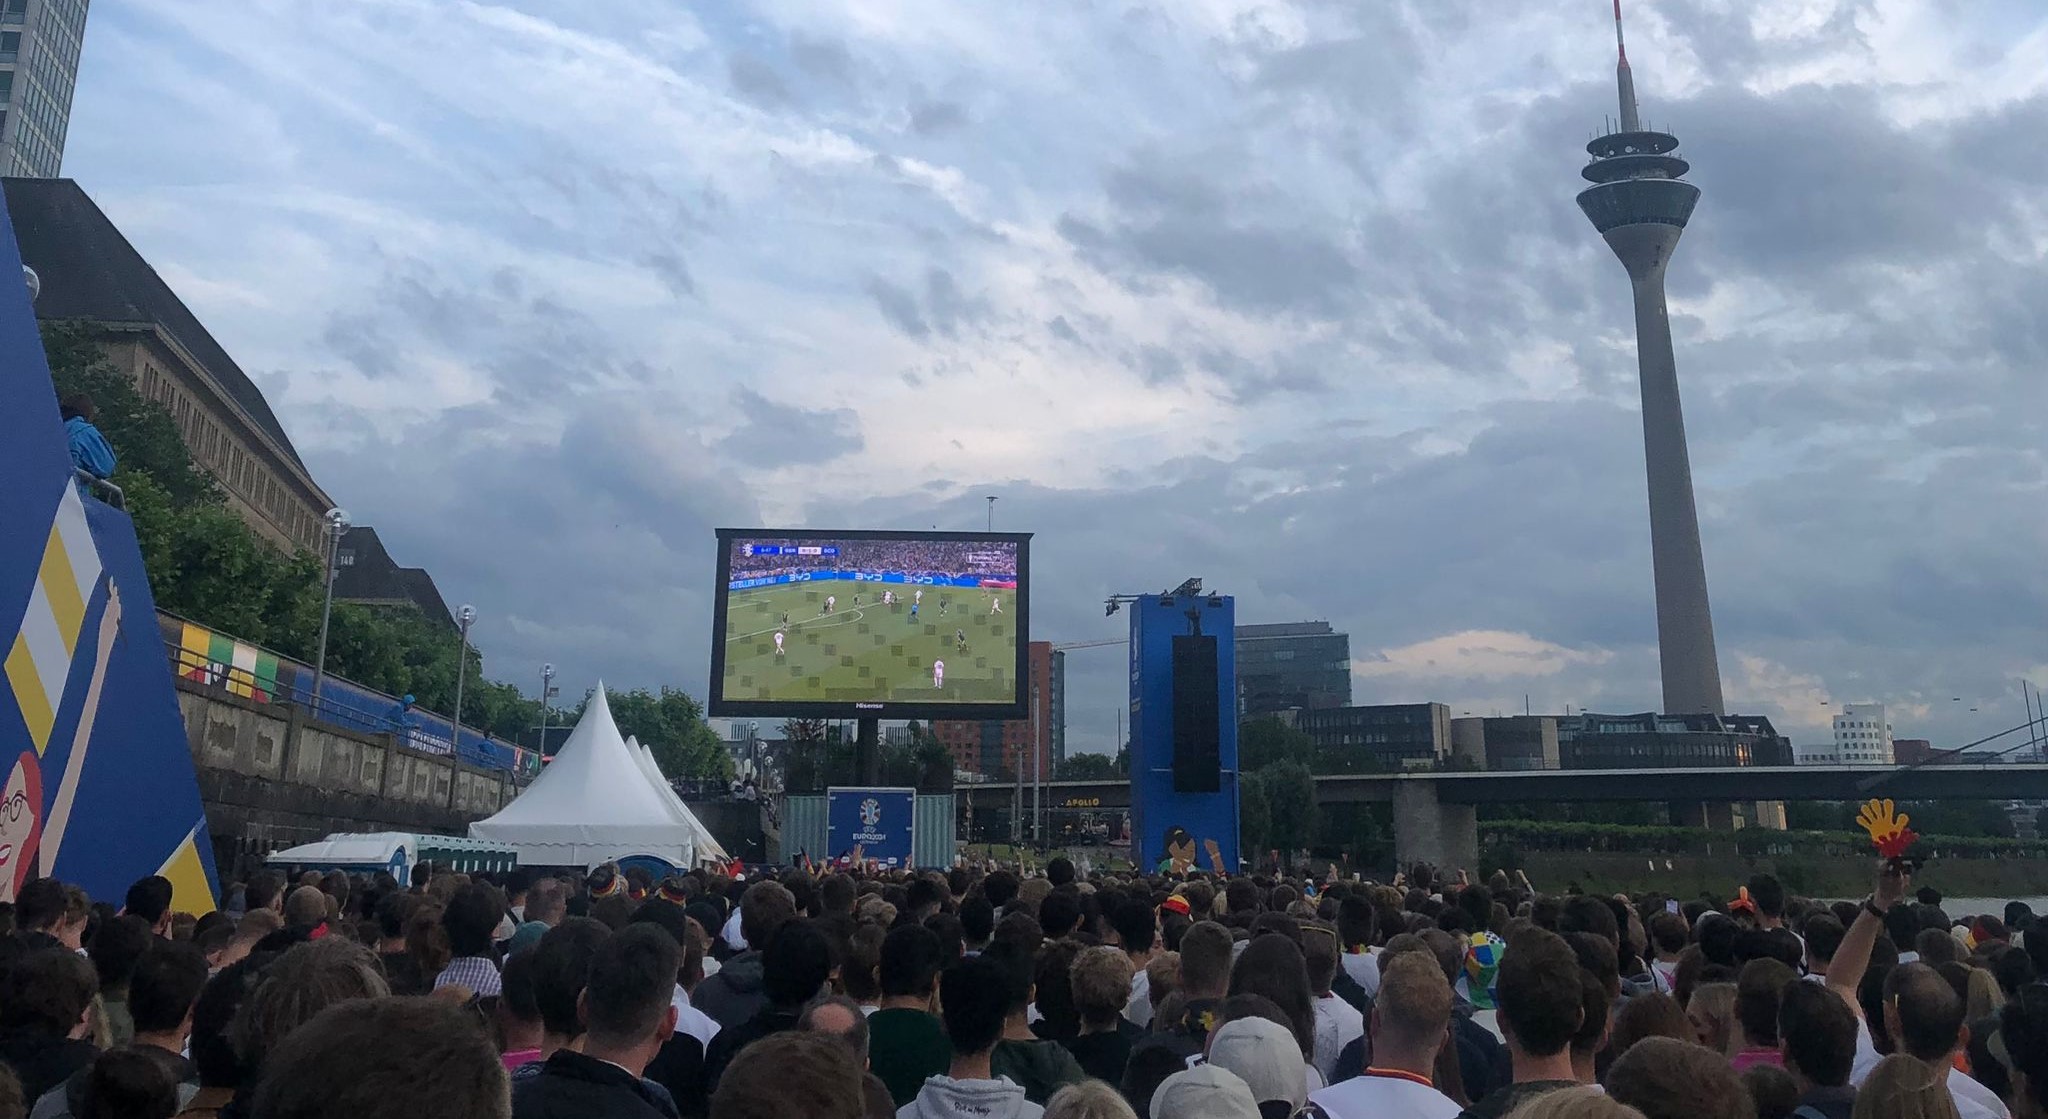 Auf dem Bild ist die Fan Zone am Rheinufer in Düsseldorf zu sehen. Auf einem großen Bildschirm läuft ein Deutschland Spiel. Es sind viele Leute zusehen, die gekommen sind um das Spiel anzusehen.